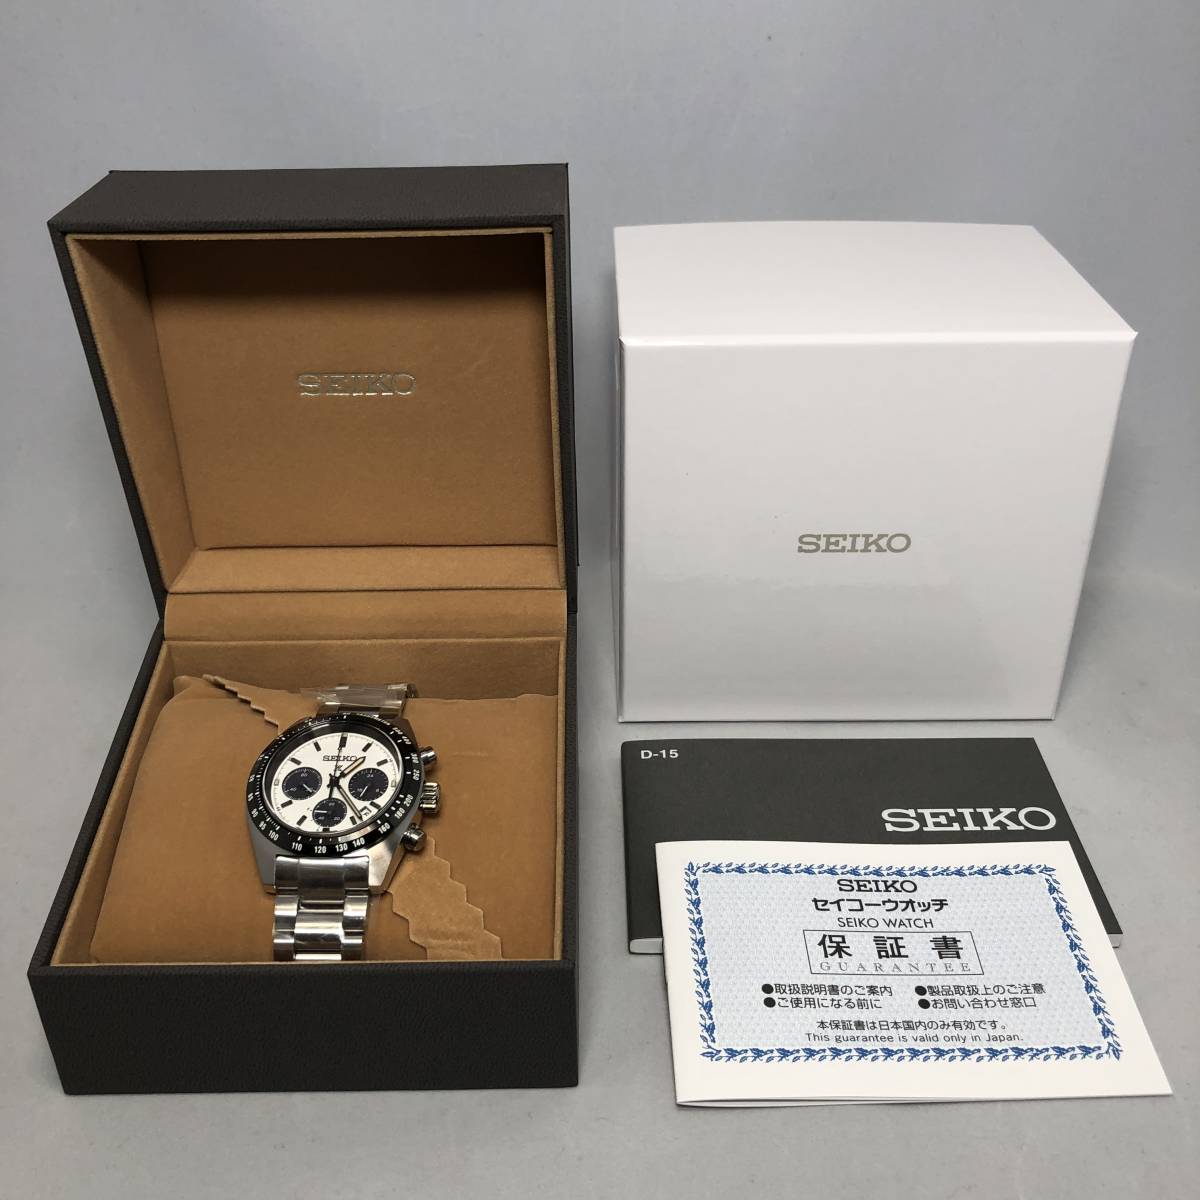 新品 国内正規品 SEIKO セイコー プロスペックス スピードタイマー SBDL085 メンズ 腕時計 ソーラー クロノグラフ PROSPEX SPEEDTIMER